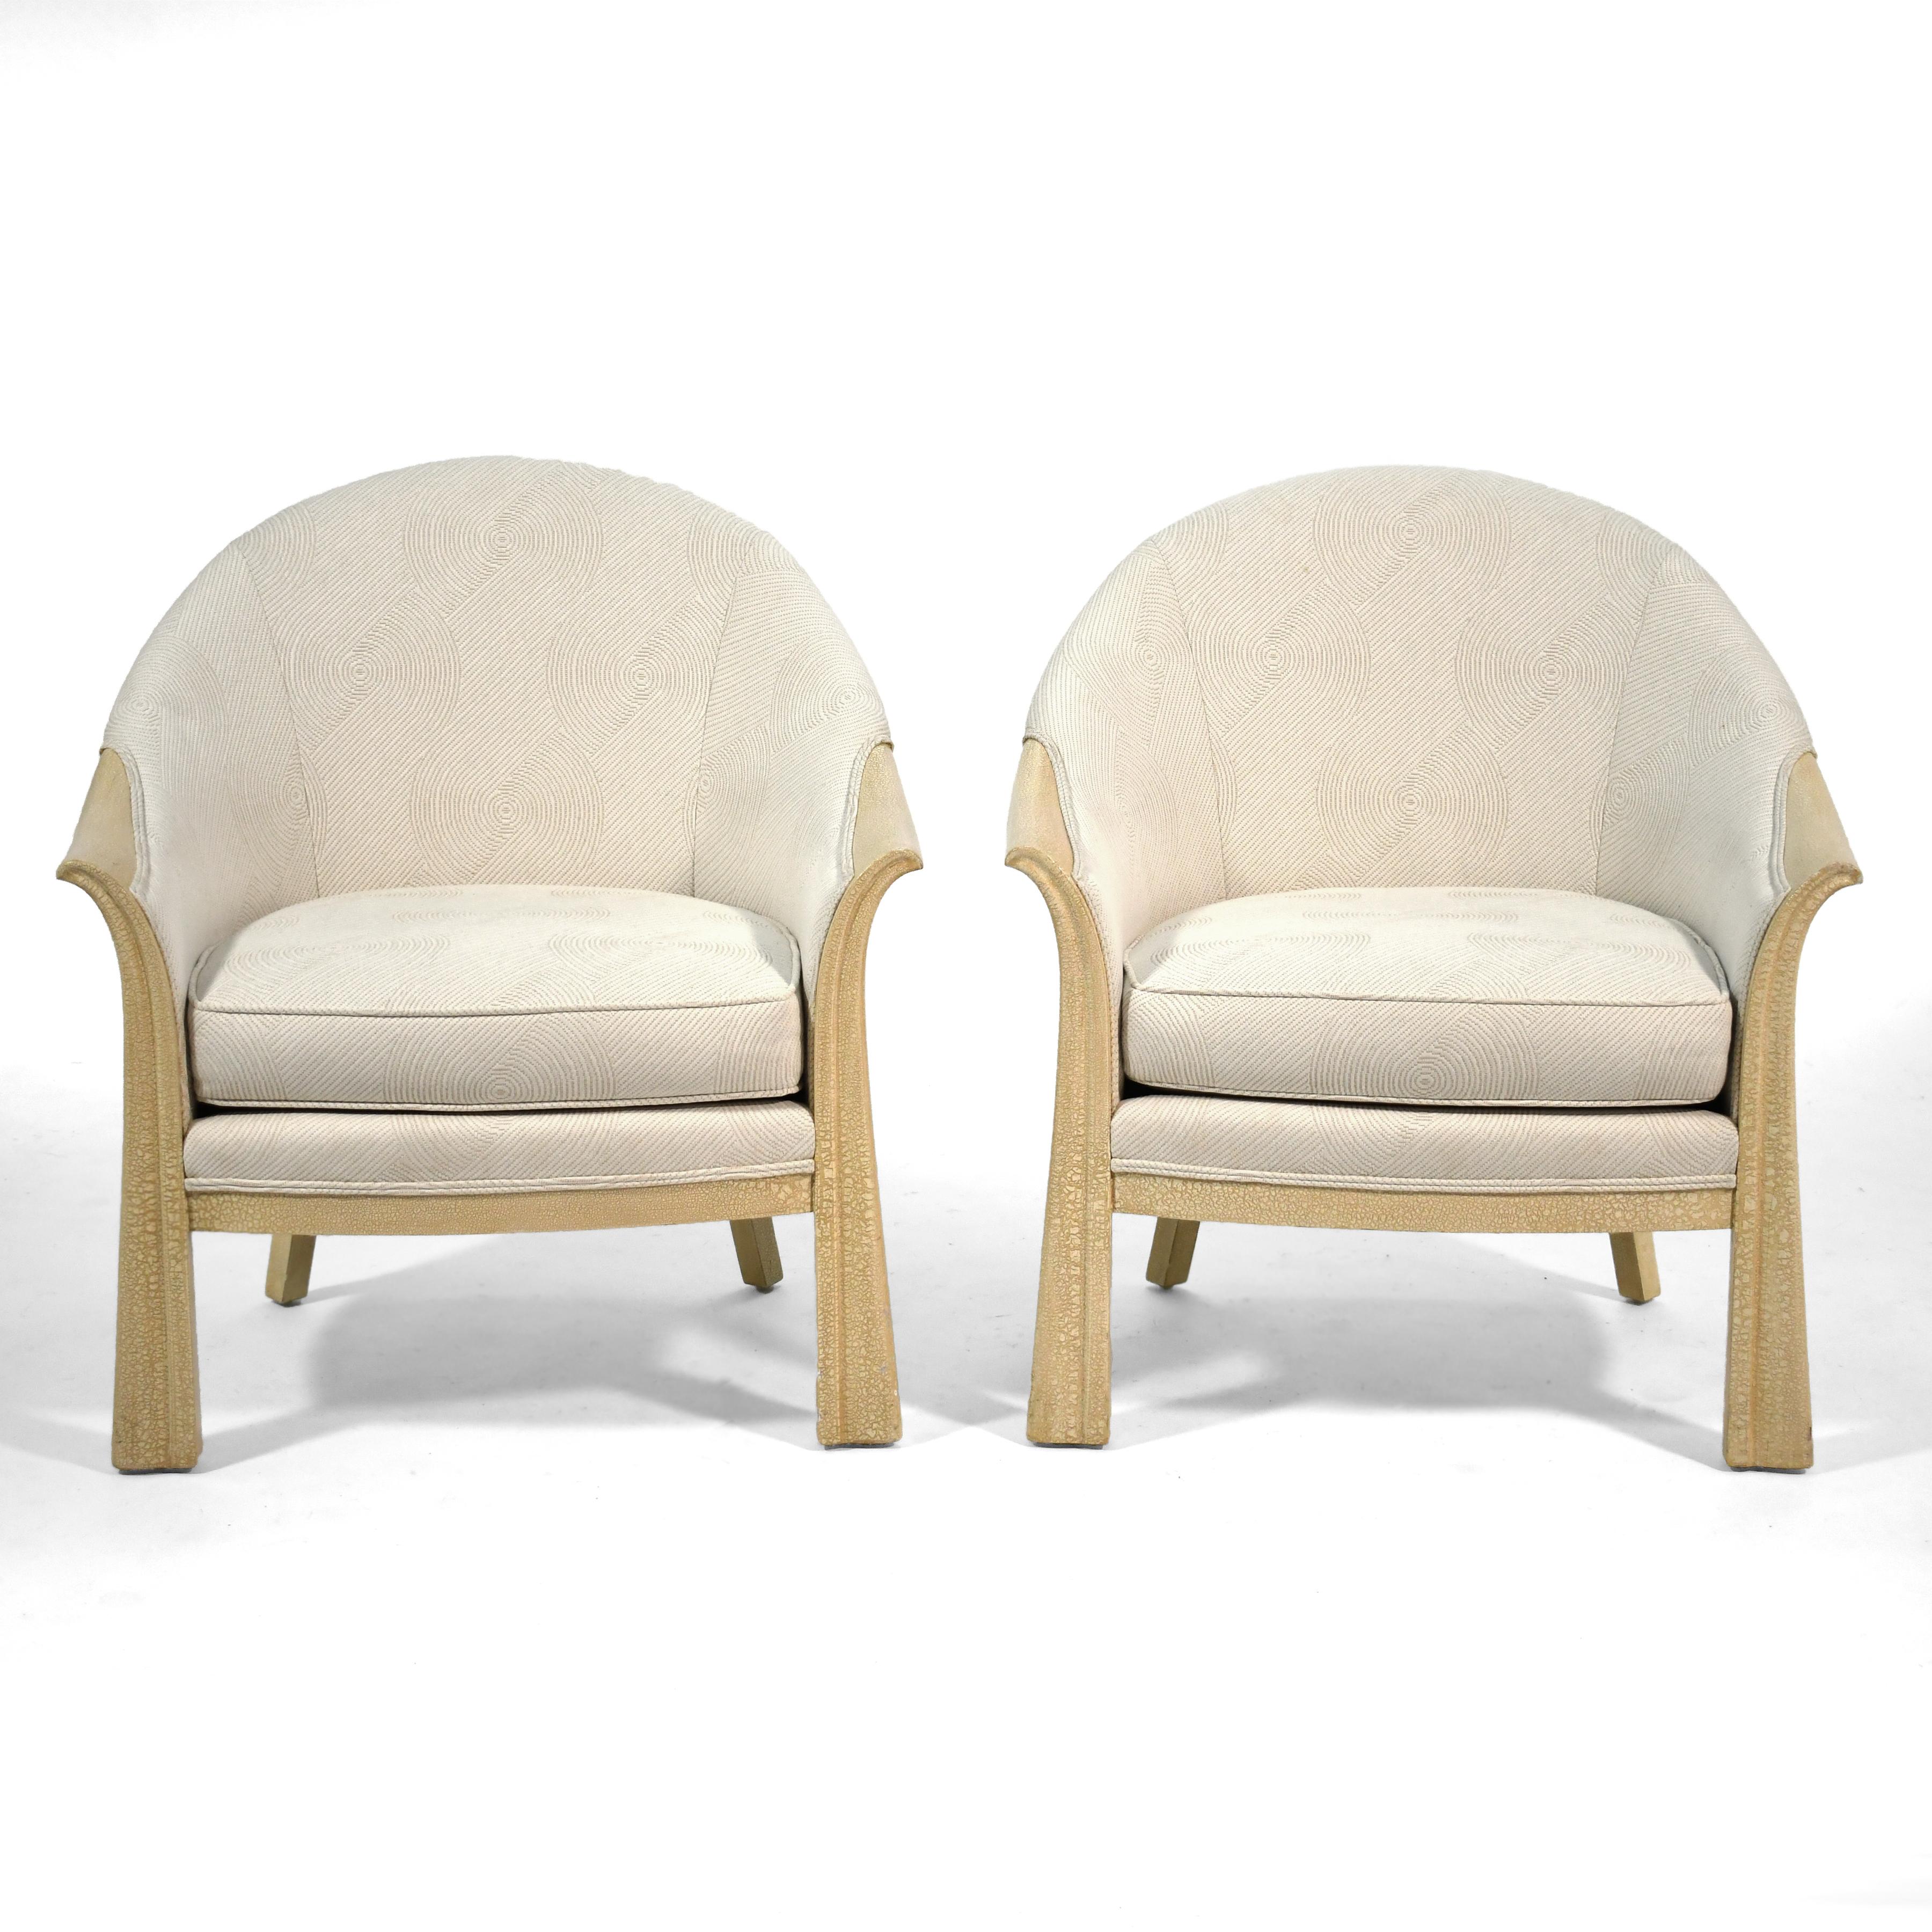 Diese beiden schönen Loungesessel sind Reproduktionen eines Entwurfs von Pierre Chareau. Sie wurden von dem bedeutenden Chicagoer Innenarchitekten Roy Klipp (1923-2010) in Auftrag gegeben und von Interior Crafts hergestellt. Die Rahmen sind